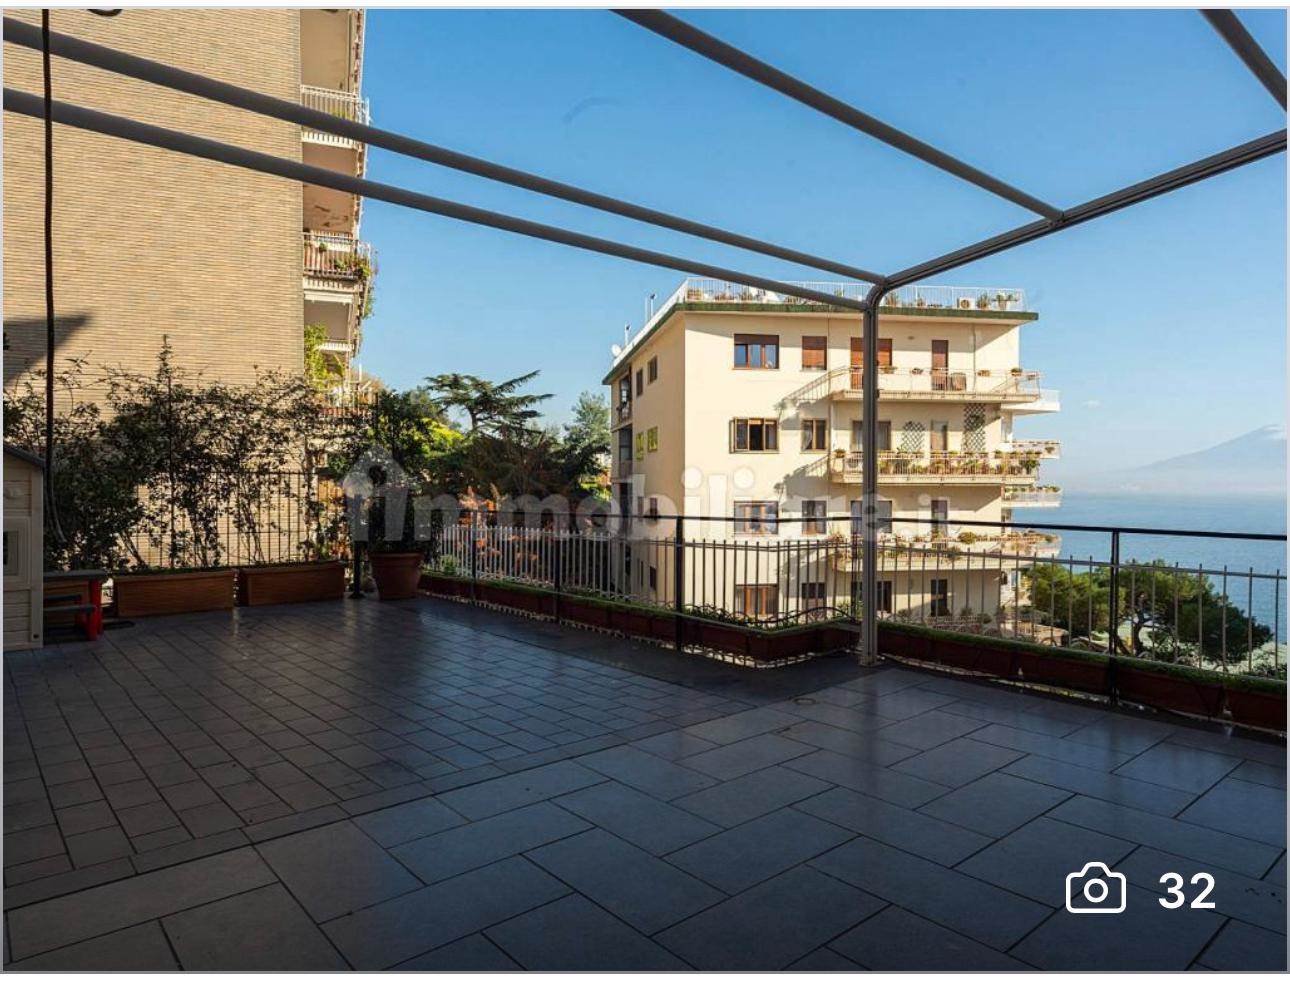 Rif: Rif. Donato Porricelli - Arco Immobiliare Luxury con sede in Via dei Mille 16 propone in vendita, zona Posillipo, un prestigioso appartamento 